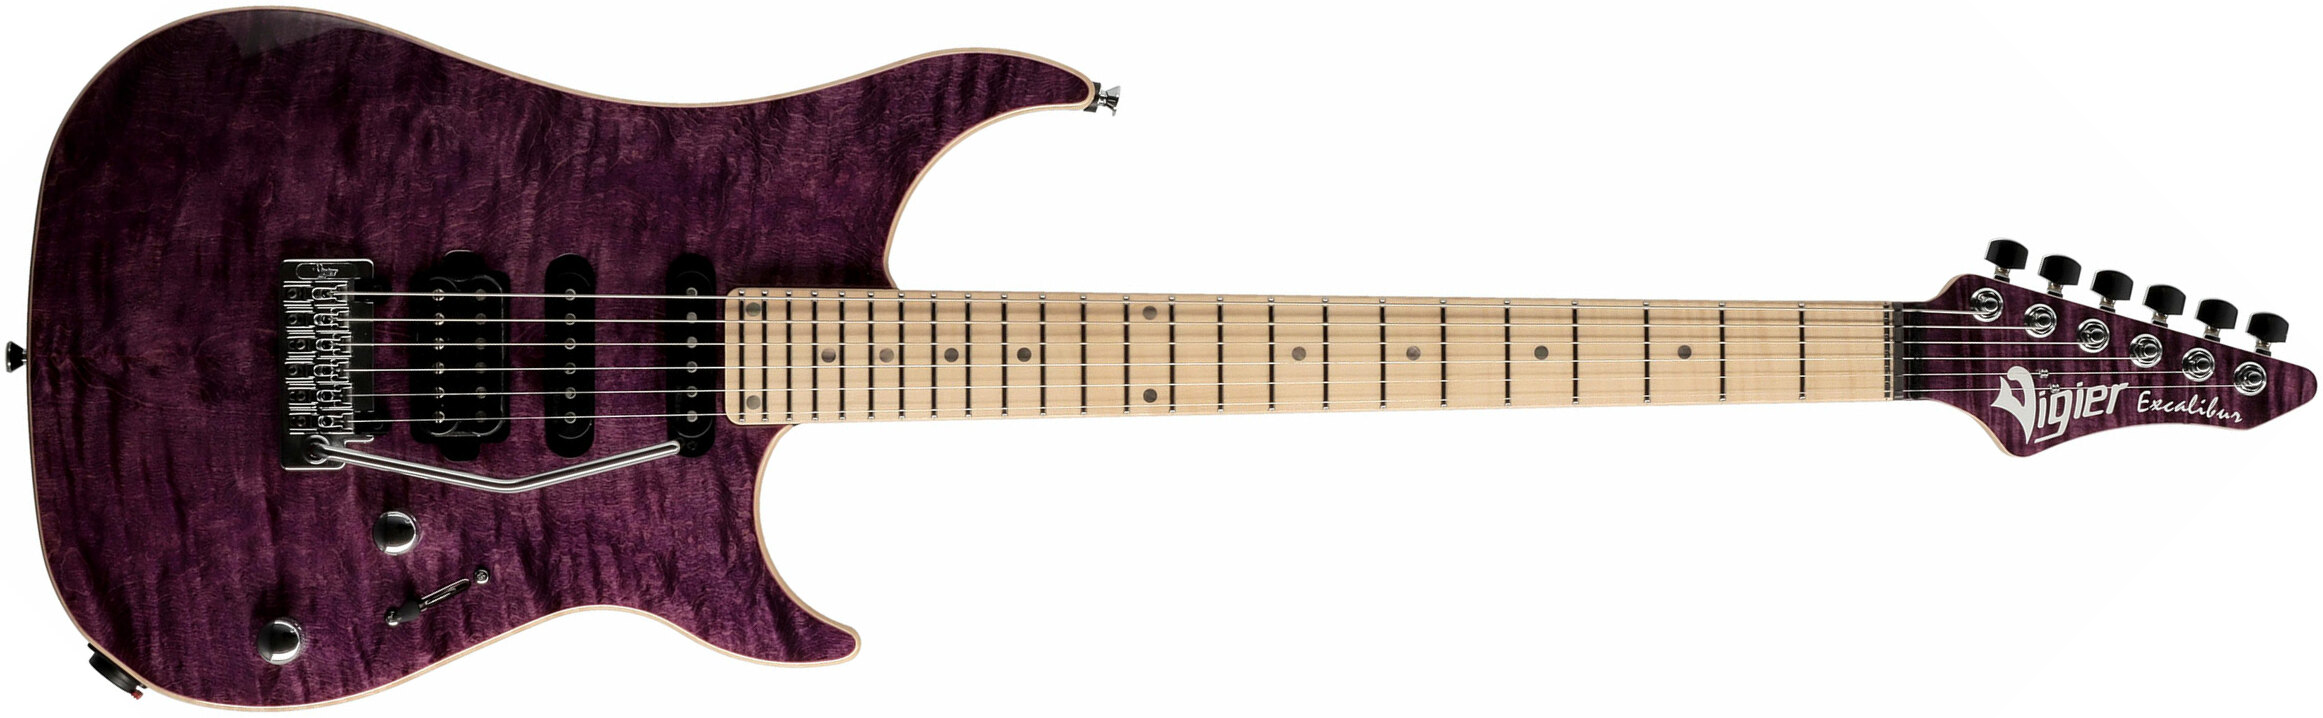 Vigier Excalibur Ultra Blues Hss Trem Mn - Amethyst Purple - Guitare Électrique Forme Str - Main picture